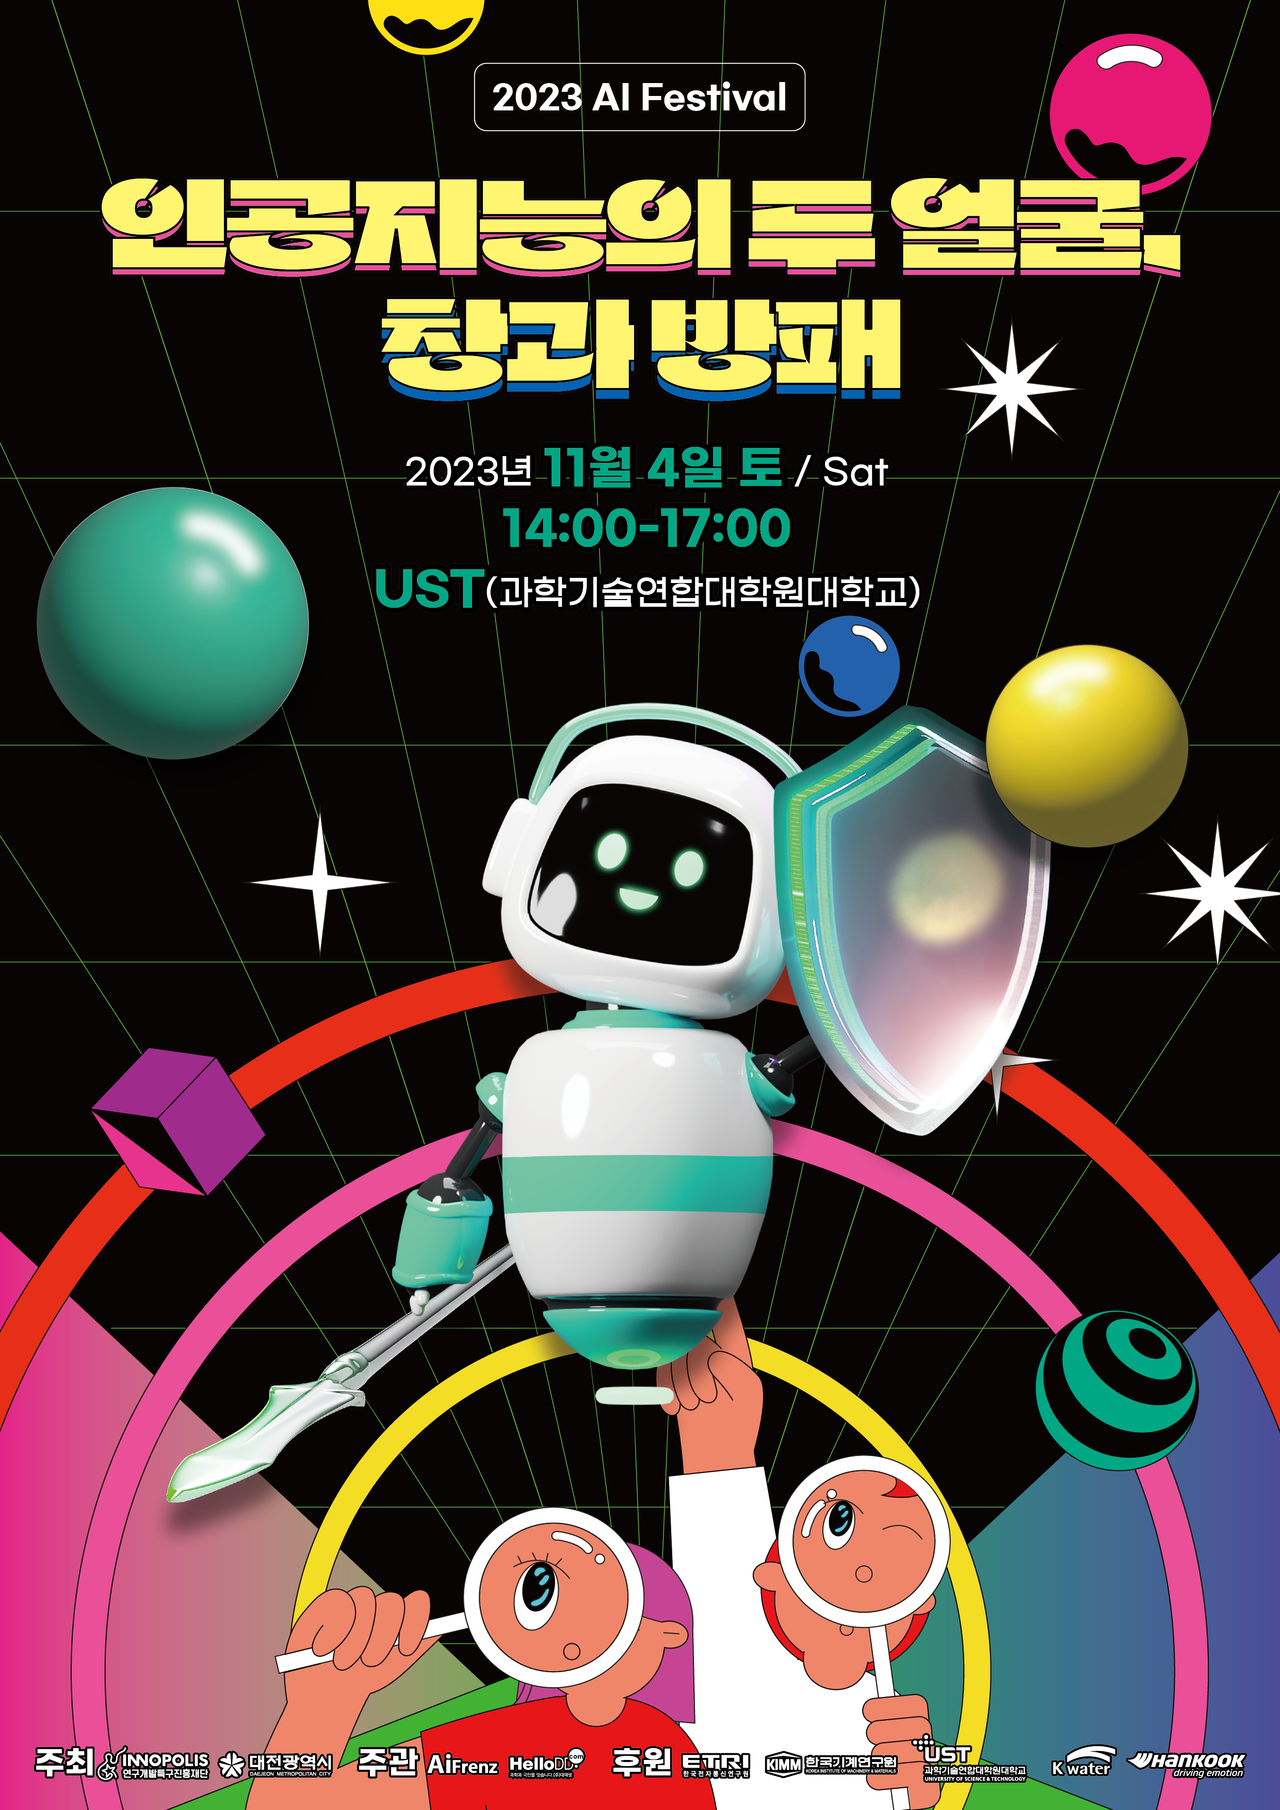 오는 11월 4일 토요일, 오후 2시부터 대전에서 ‘2023 AI 페스티벌’이 열린다./제공=2023 AI 페스티벌